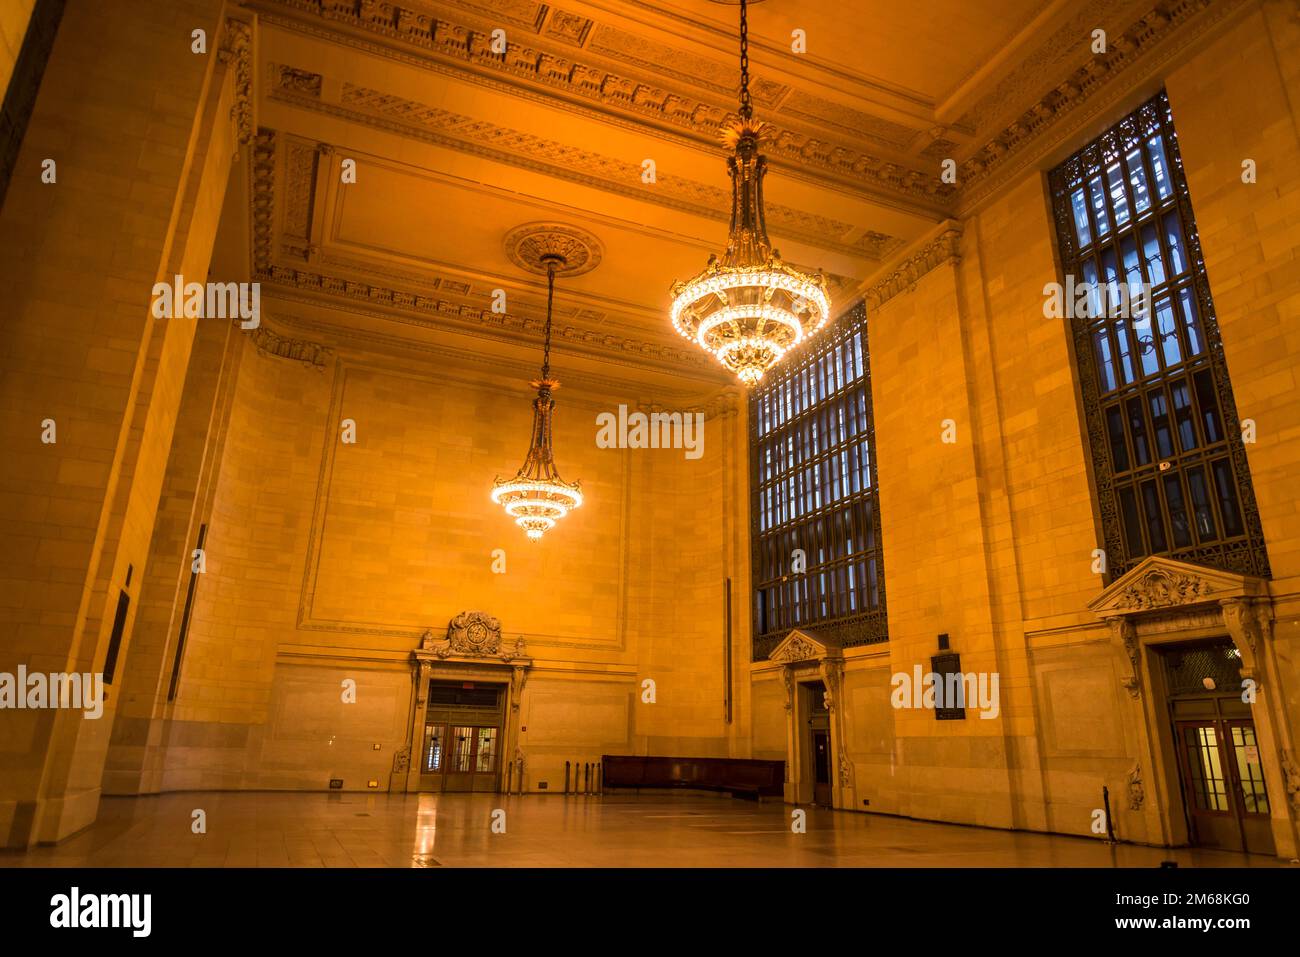 Grand Central Terminal, l'iconico terminal ferroviario dei pendolari situato in 42nd Street e Park Avenue a Midtown Manhattan, New York City, USA Foto Stock